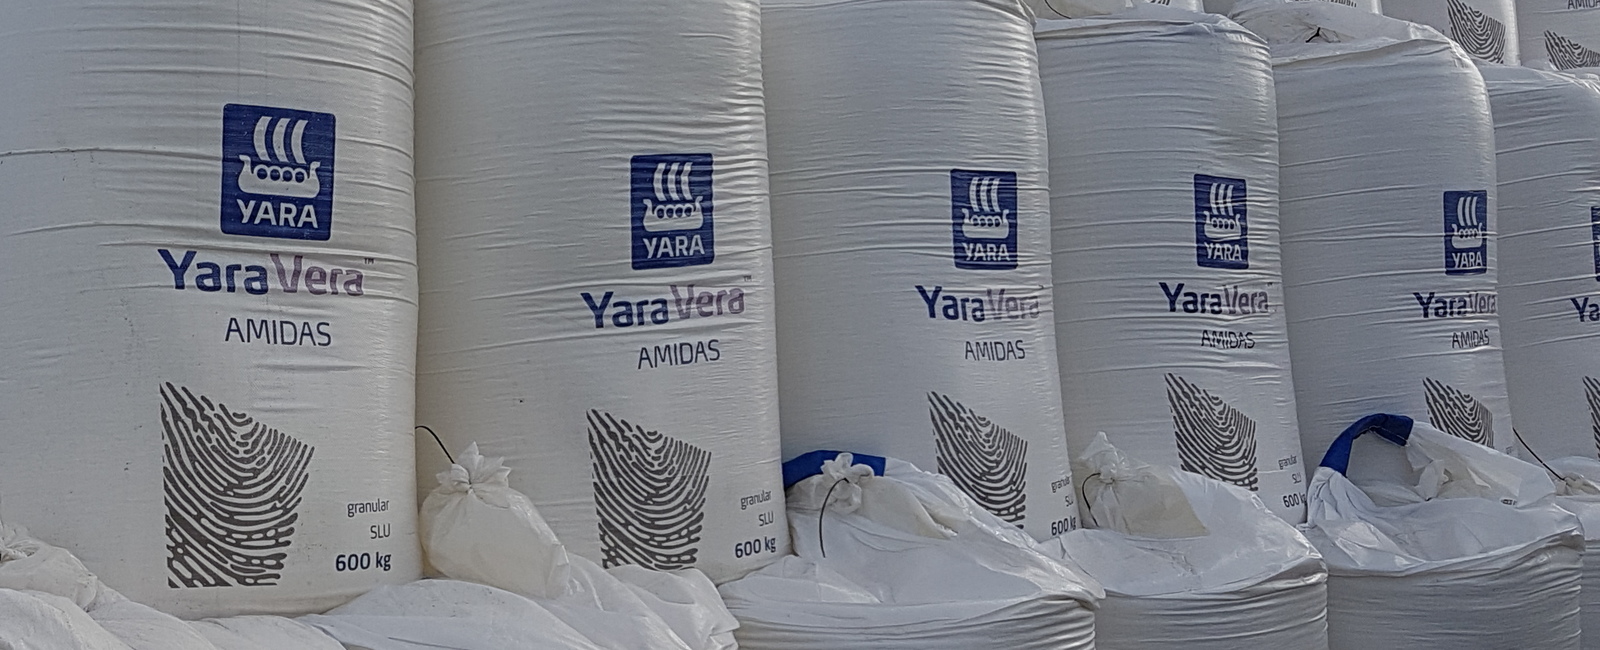 Added value urea fertilizers - YaraVera